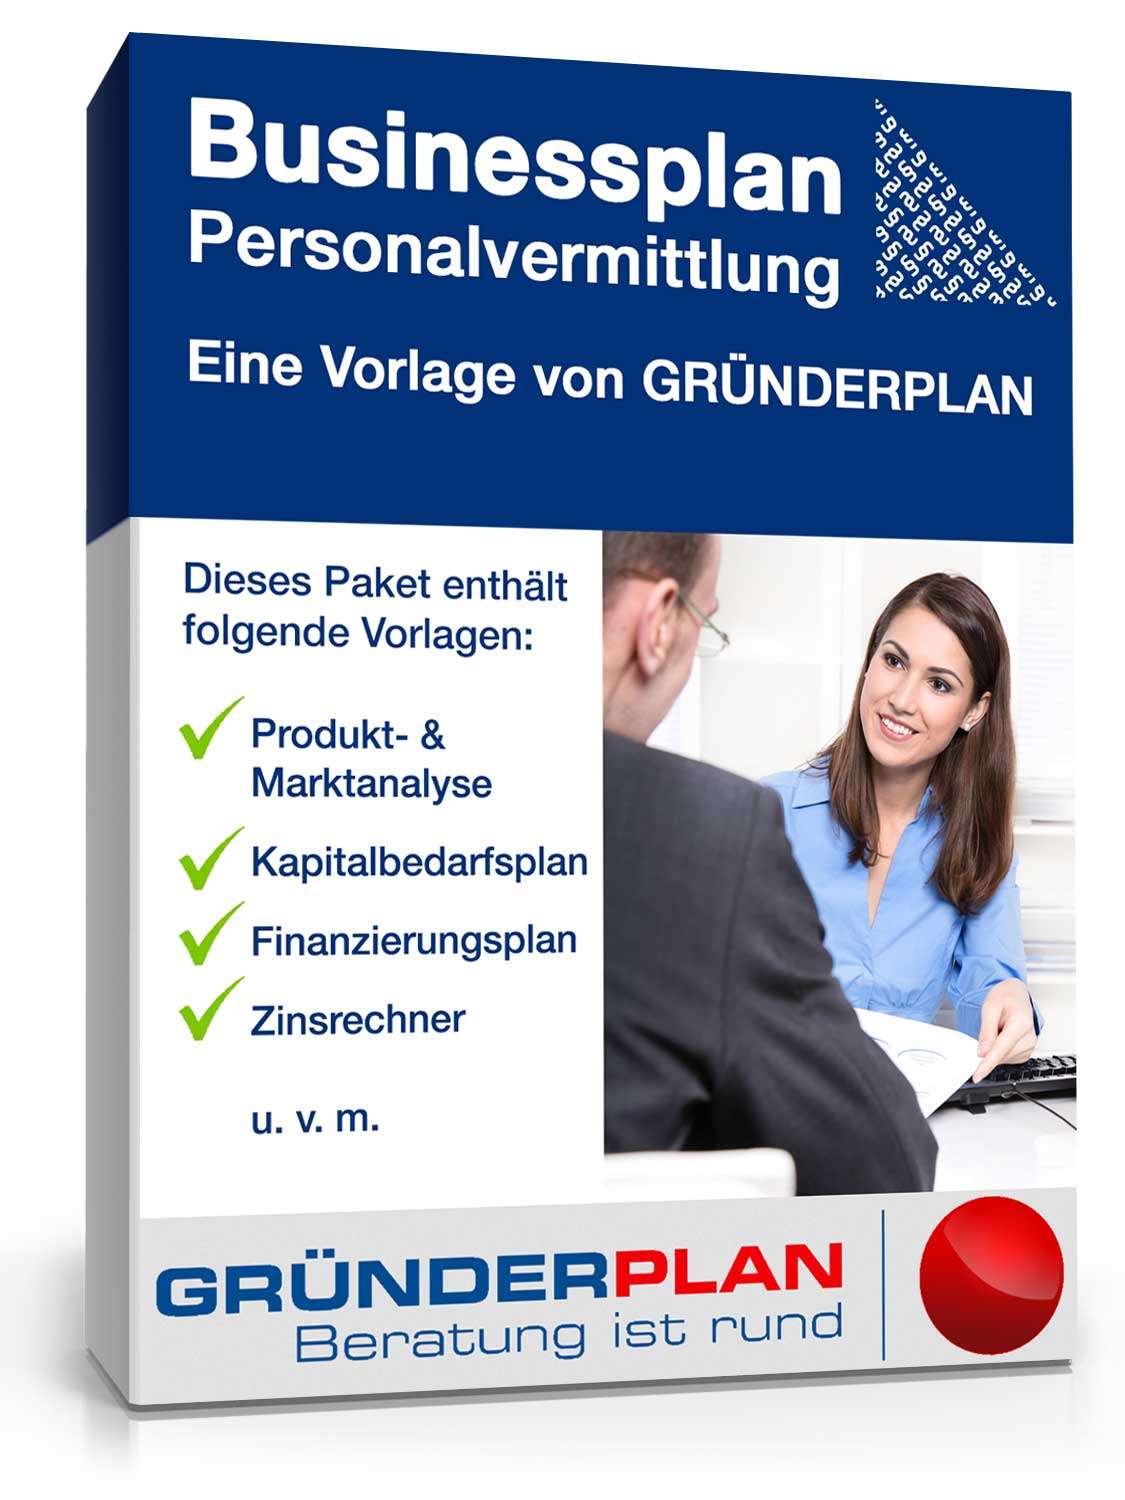 Hauptbild des Produkts: Businessplan Personalvermittlung von Gründerplan